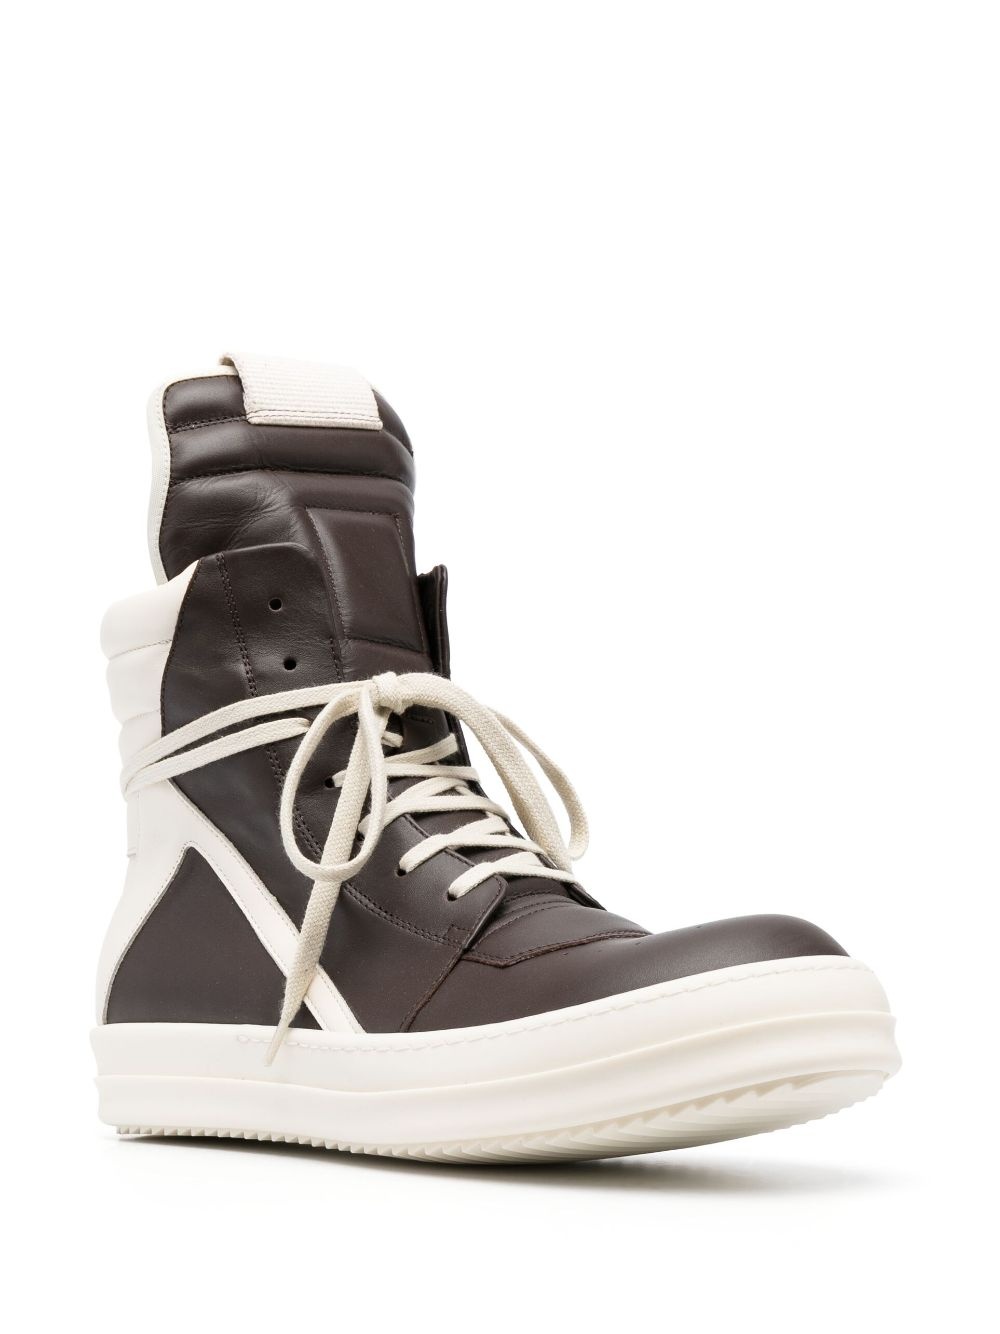 Rick Owens Geobasket Leather Sneakers